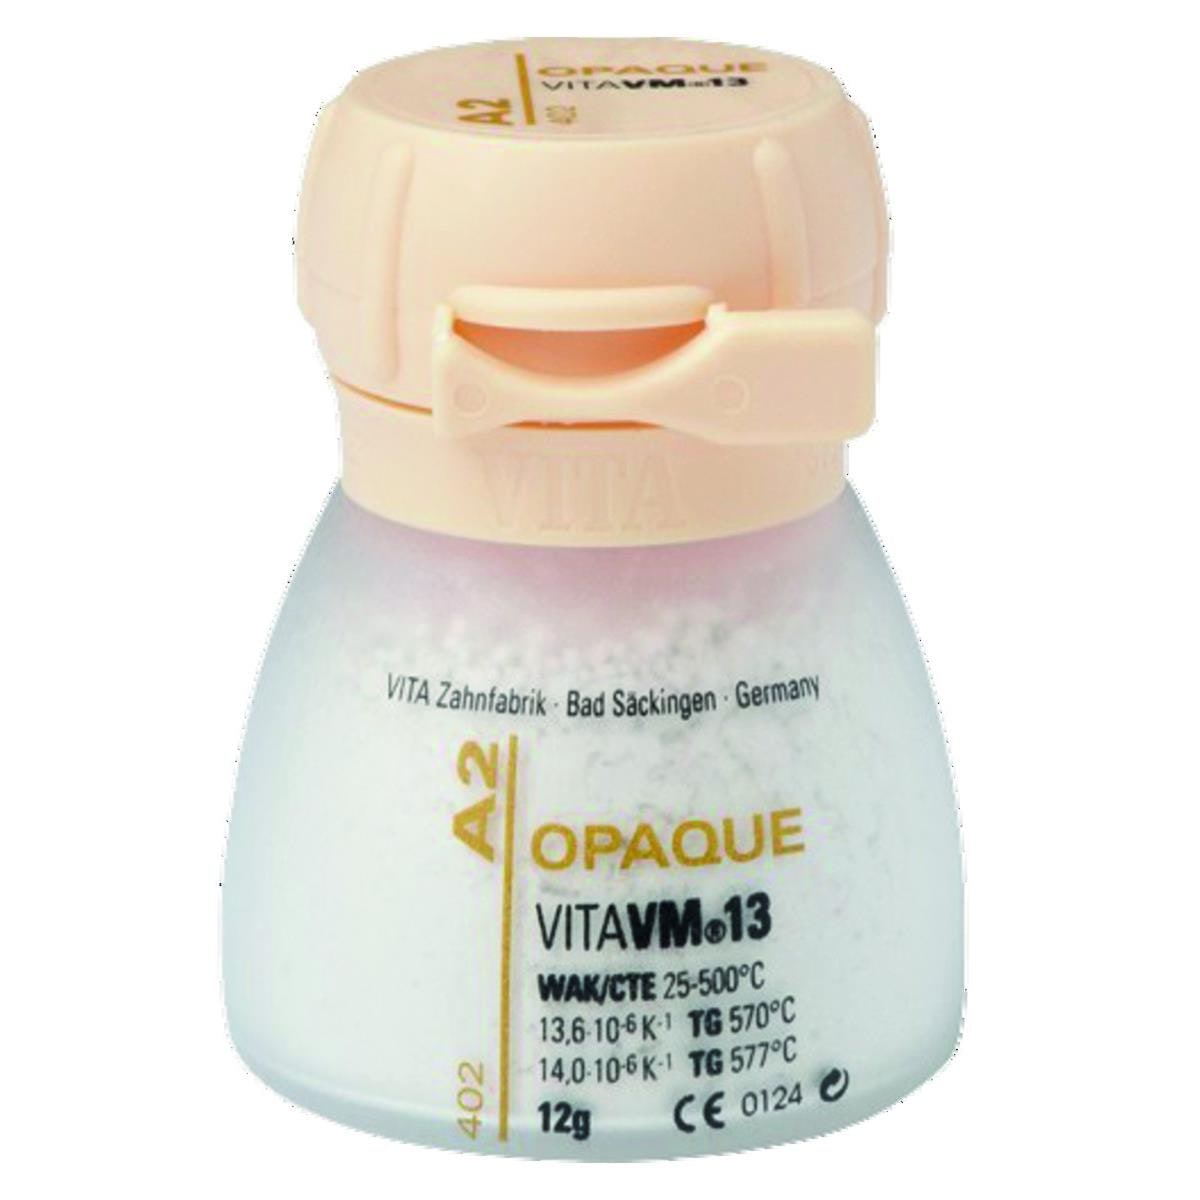 VM13 VITA - Opaque poudre - C4 - Le pot de 12 g